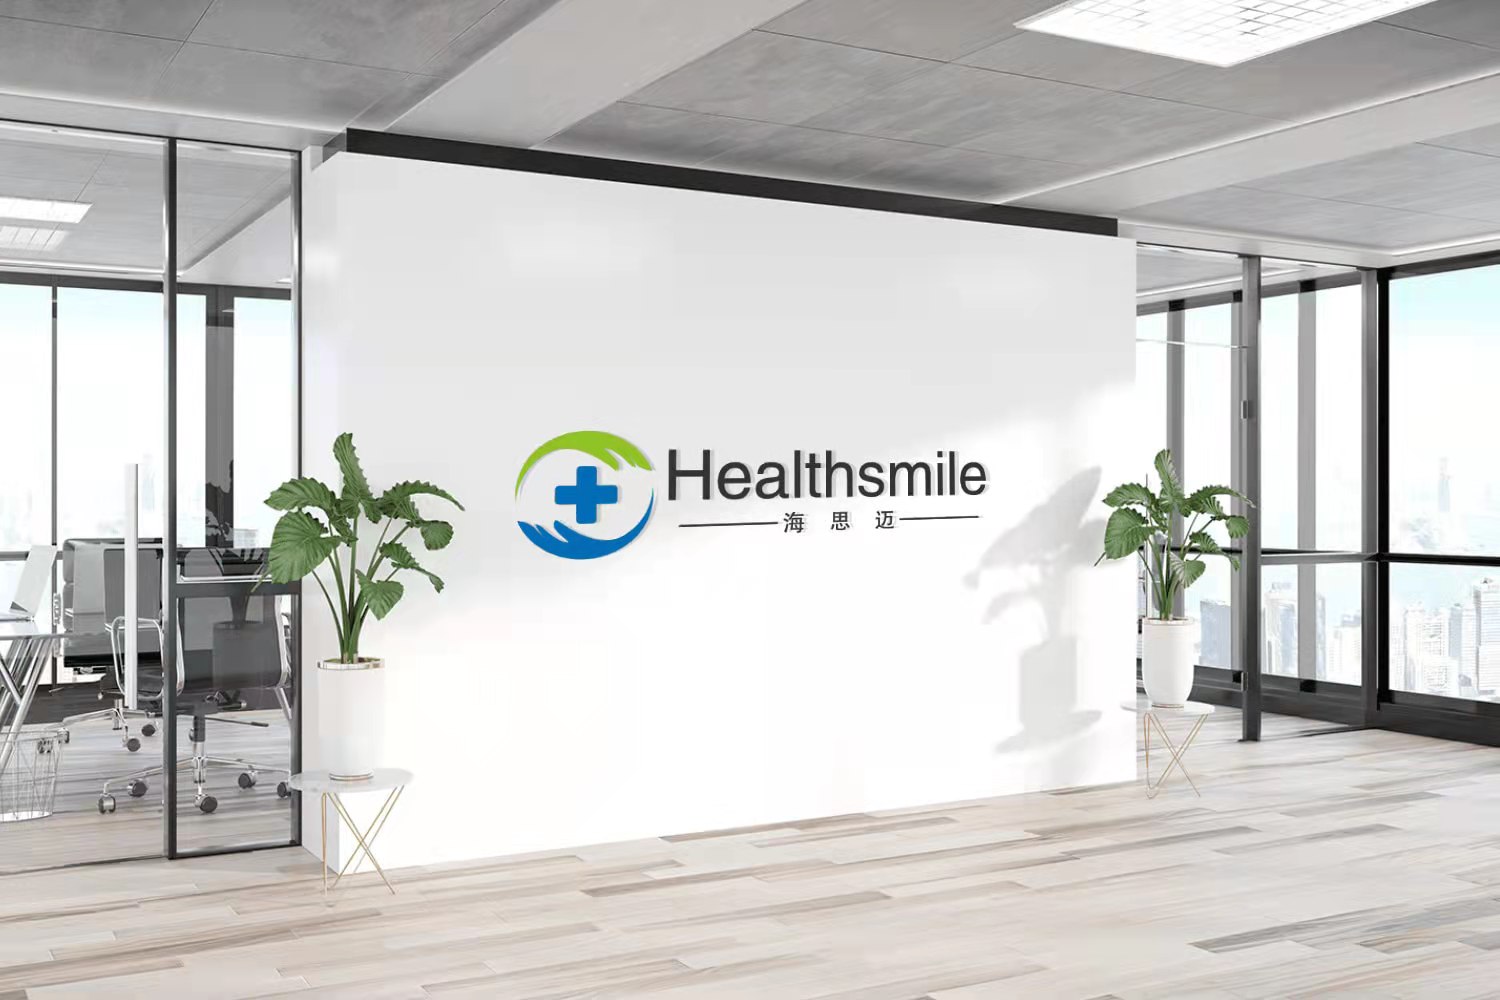 HealthSMILE သည် သင့်အား အကောင်းဆုံးထုတ်ကုန်များနှင့် ဝန်ဆောင်မှုများကို အာမခံရန် အဘယ်ကြောင့် သတ္တိရှိသနည်း။